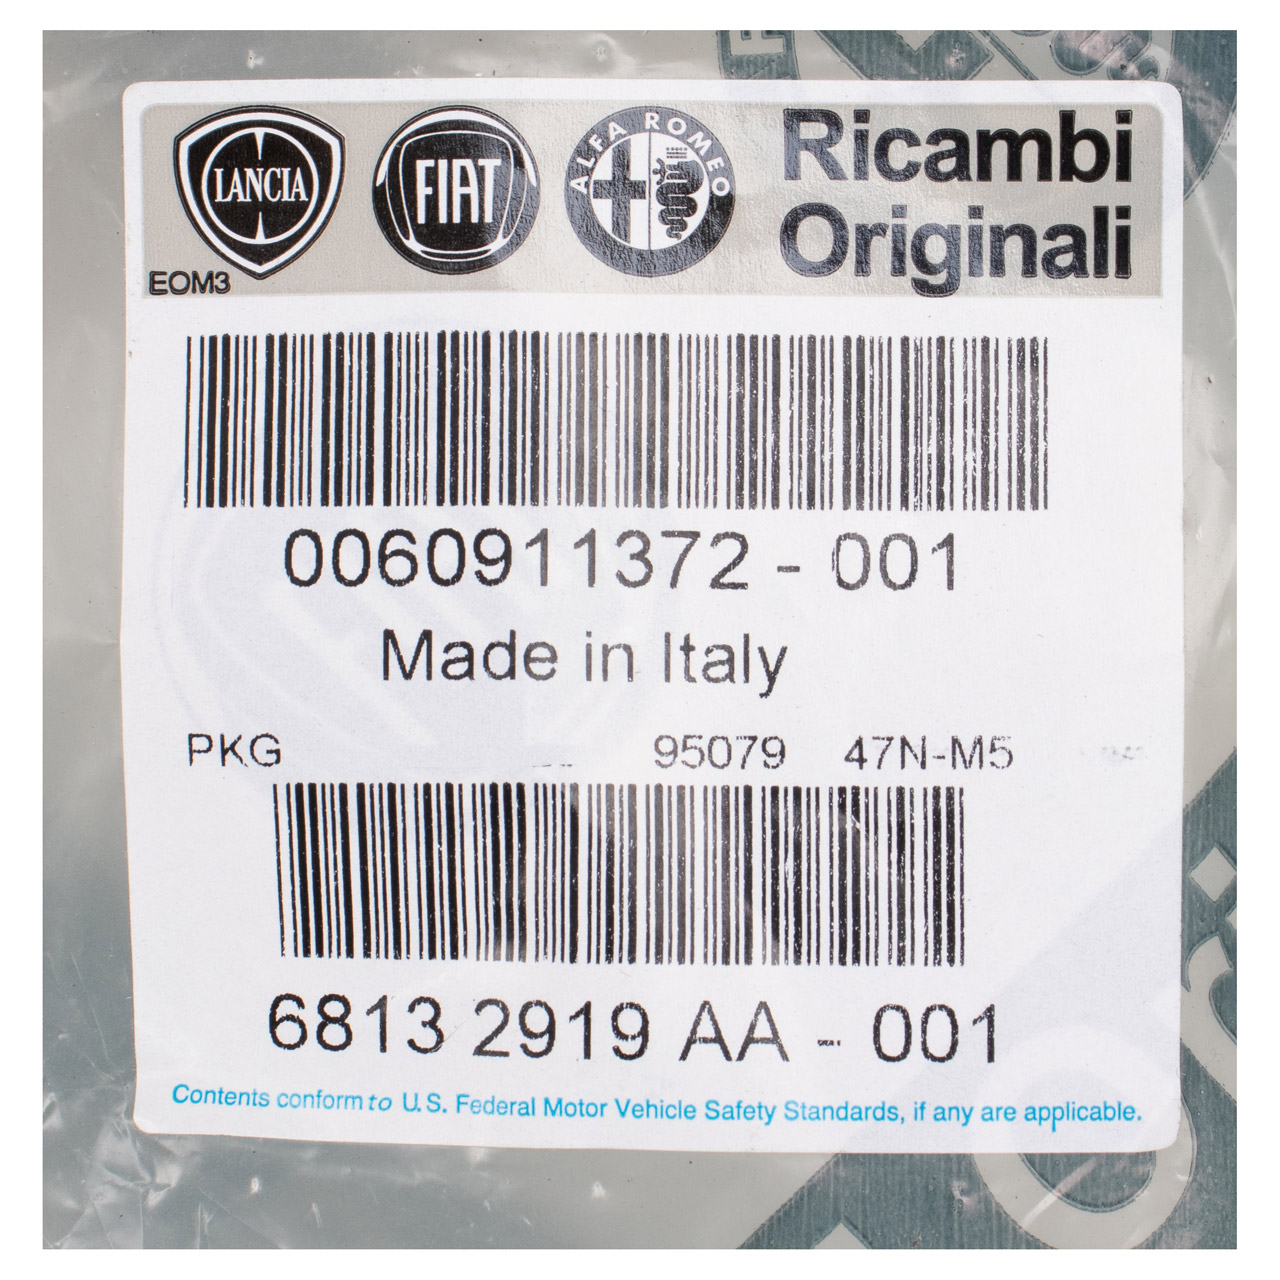 ORIGINAL Fiat Abdeckung Seitenverkleidung Fahrersitz Ducato 250 vorne links 60911372